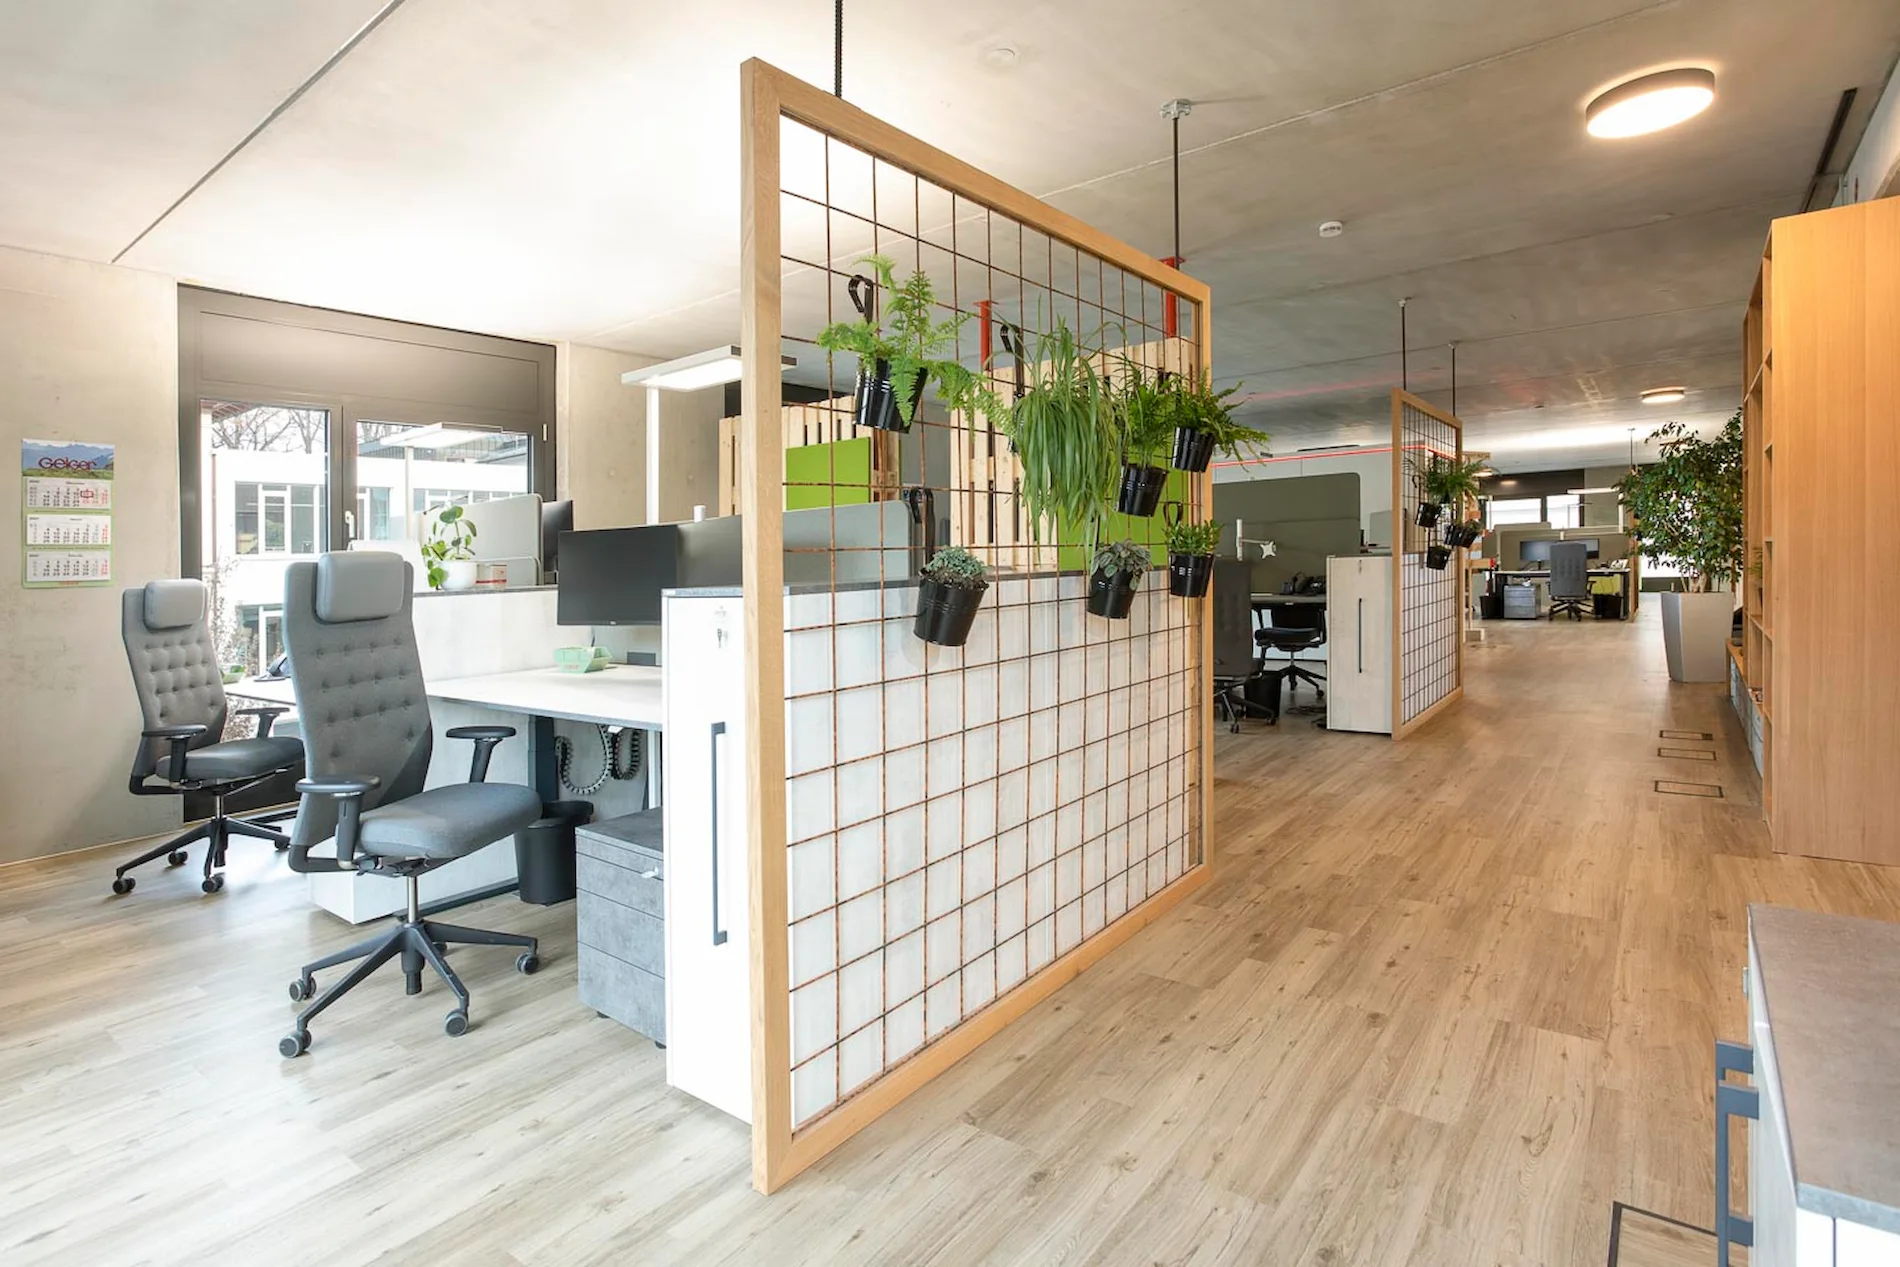 Großraumbüro mit warmen Holztönen und verschiedenen Arbeitsplatzinseln.